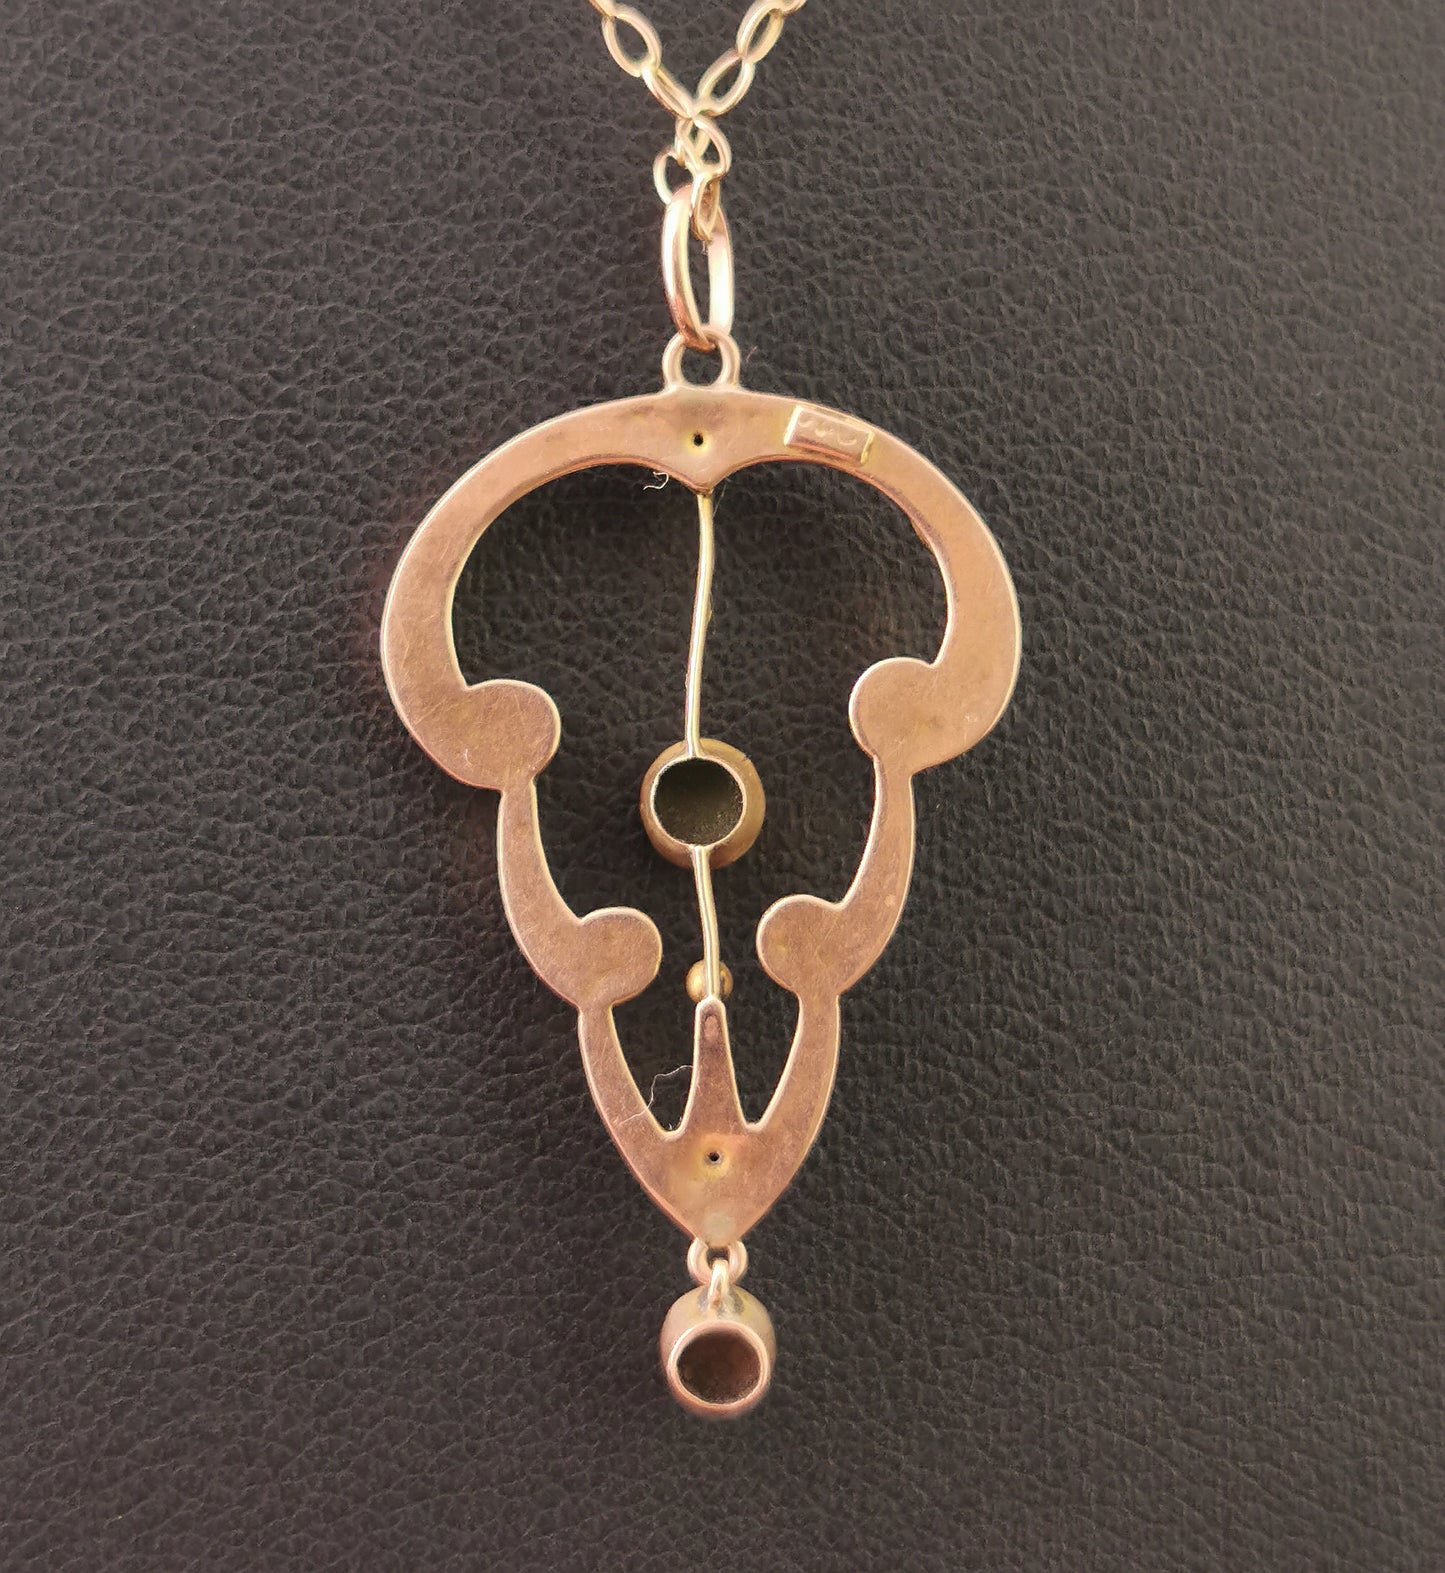 Antique Art Nouveau Turquoise lavalier pendant, 9ct Rose gold necklace